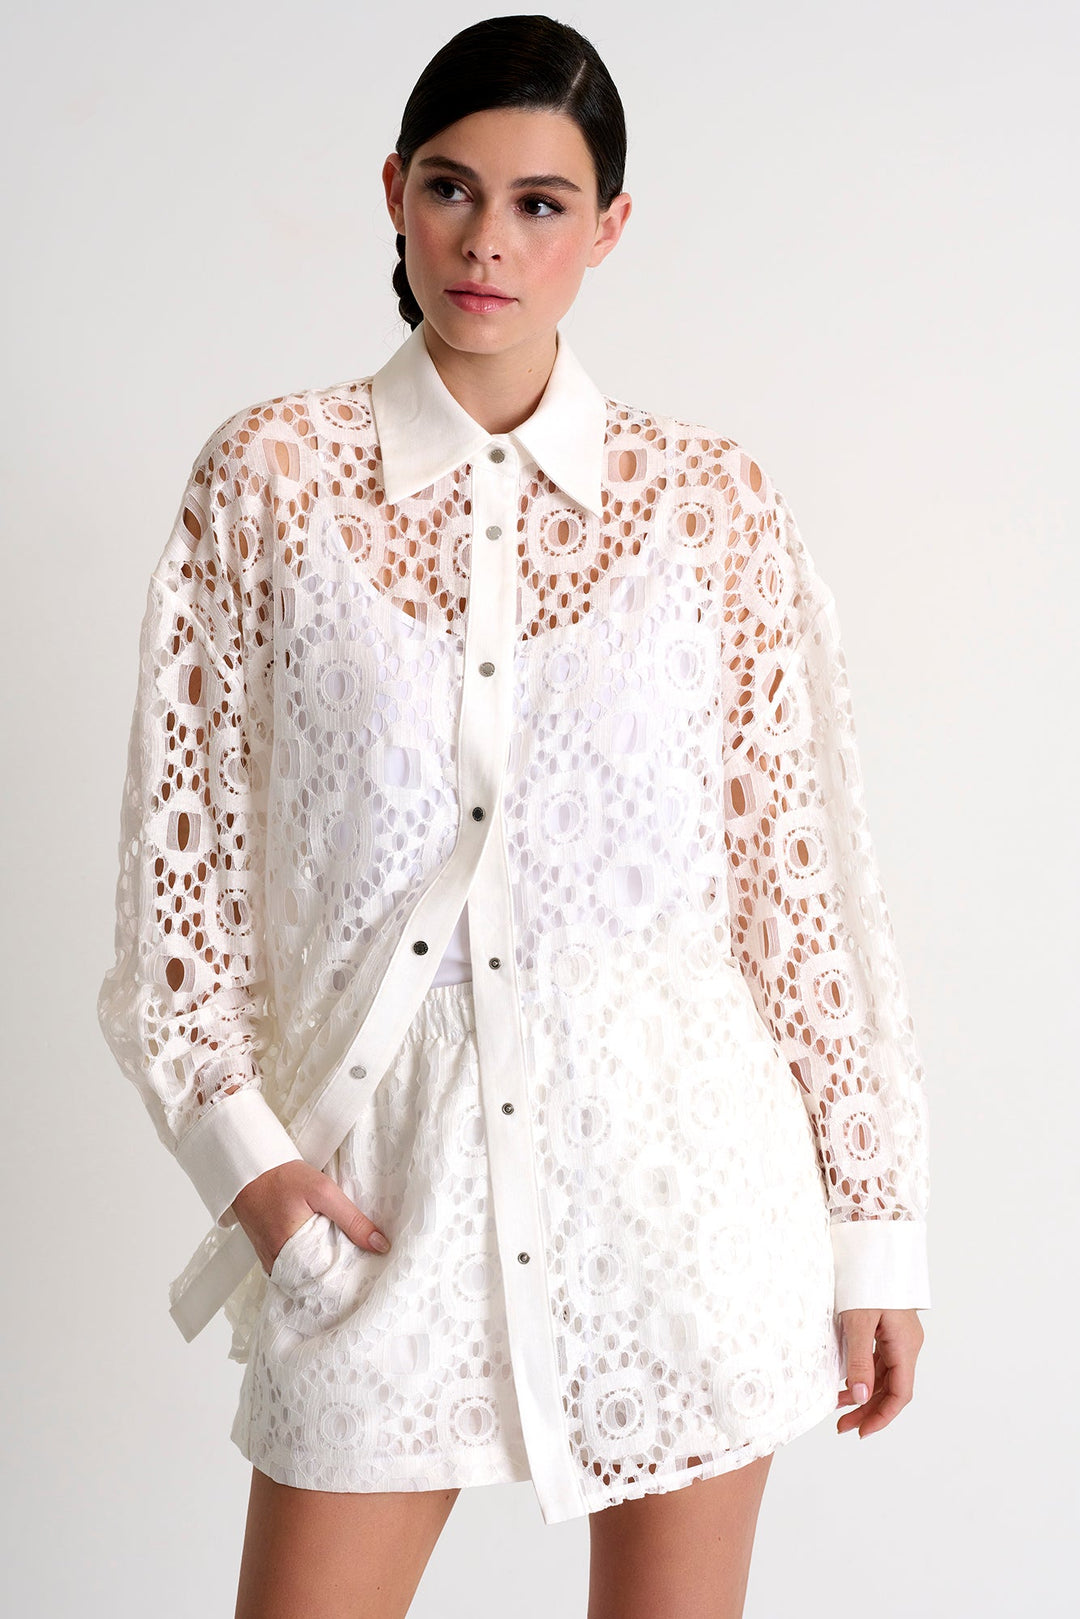 Modern Lace Shirt - 52443-83-020